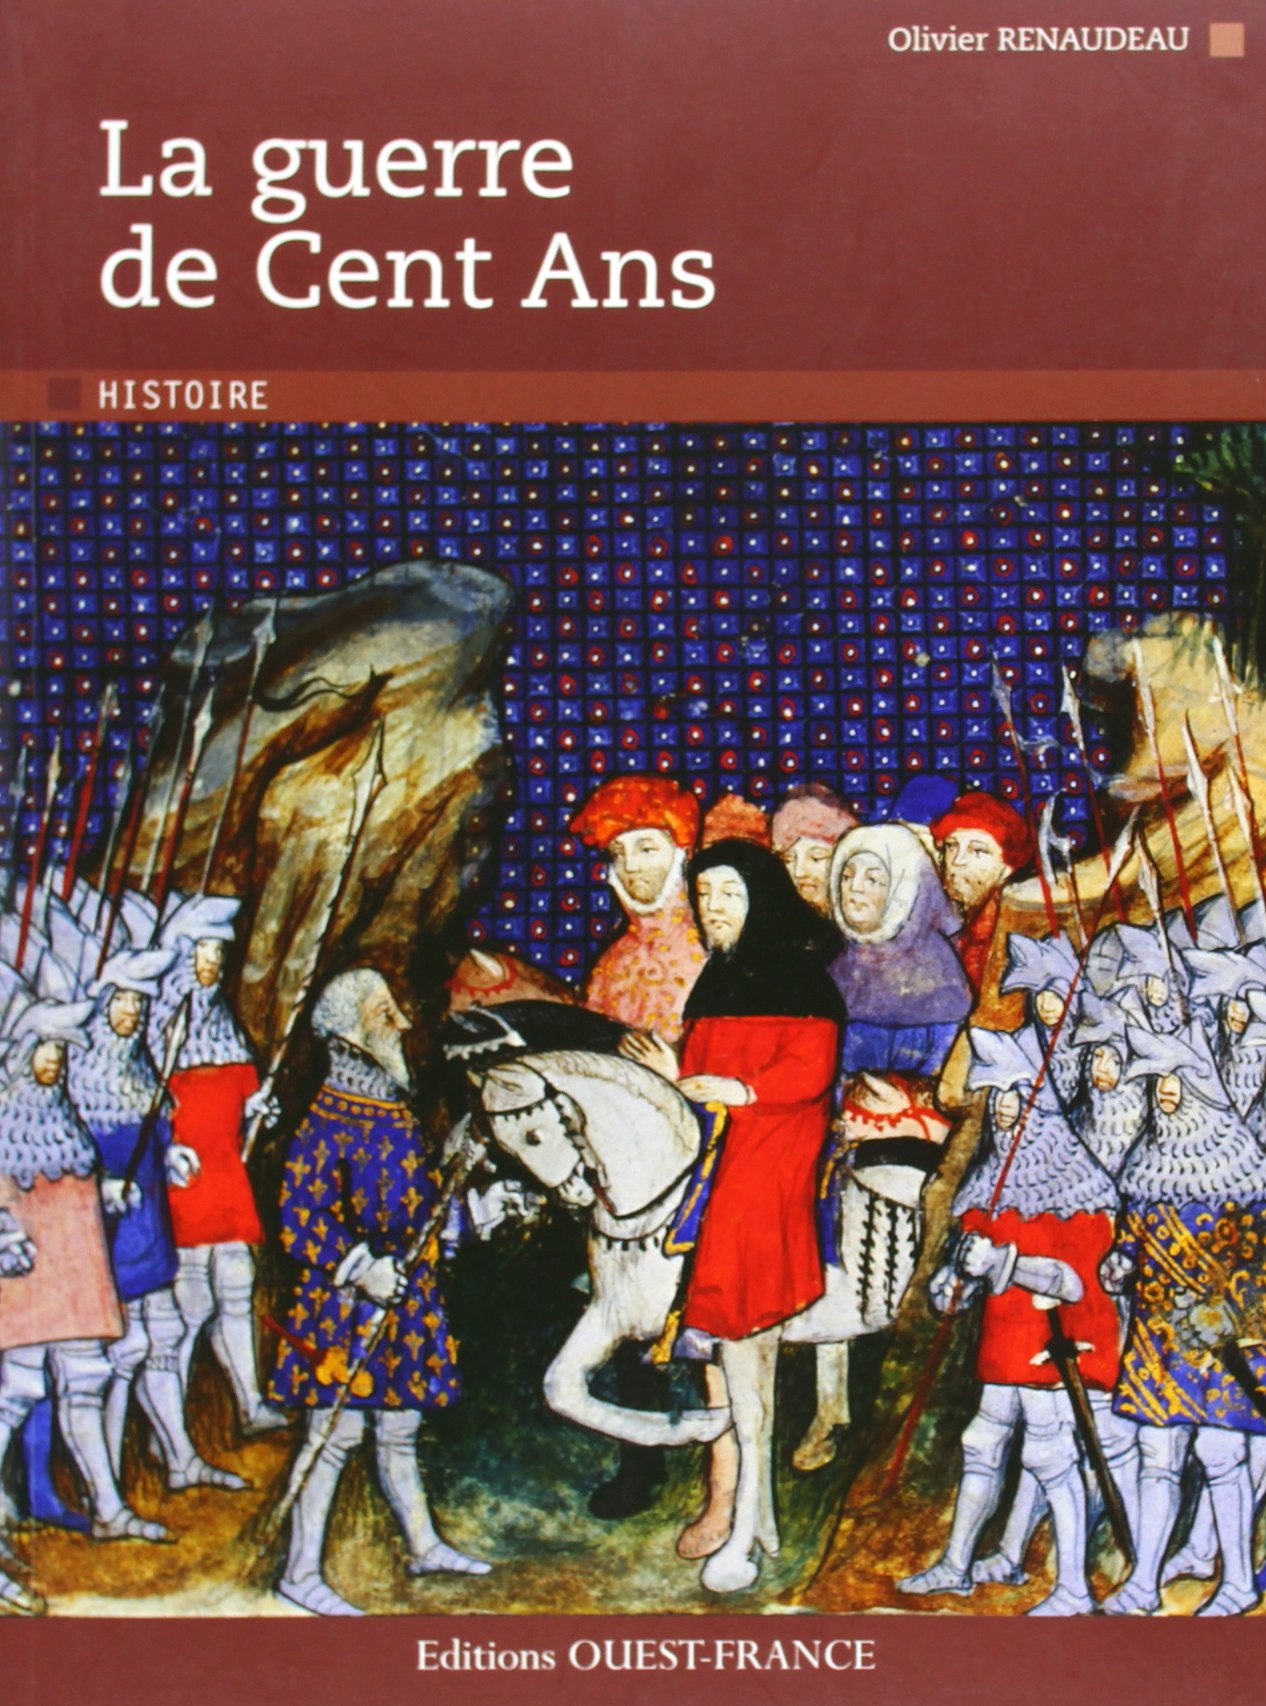 La guerre de Cent Ans, 2012, 128 p.